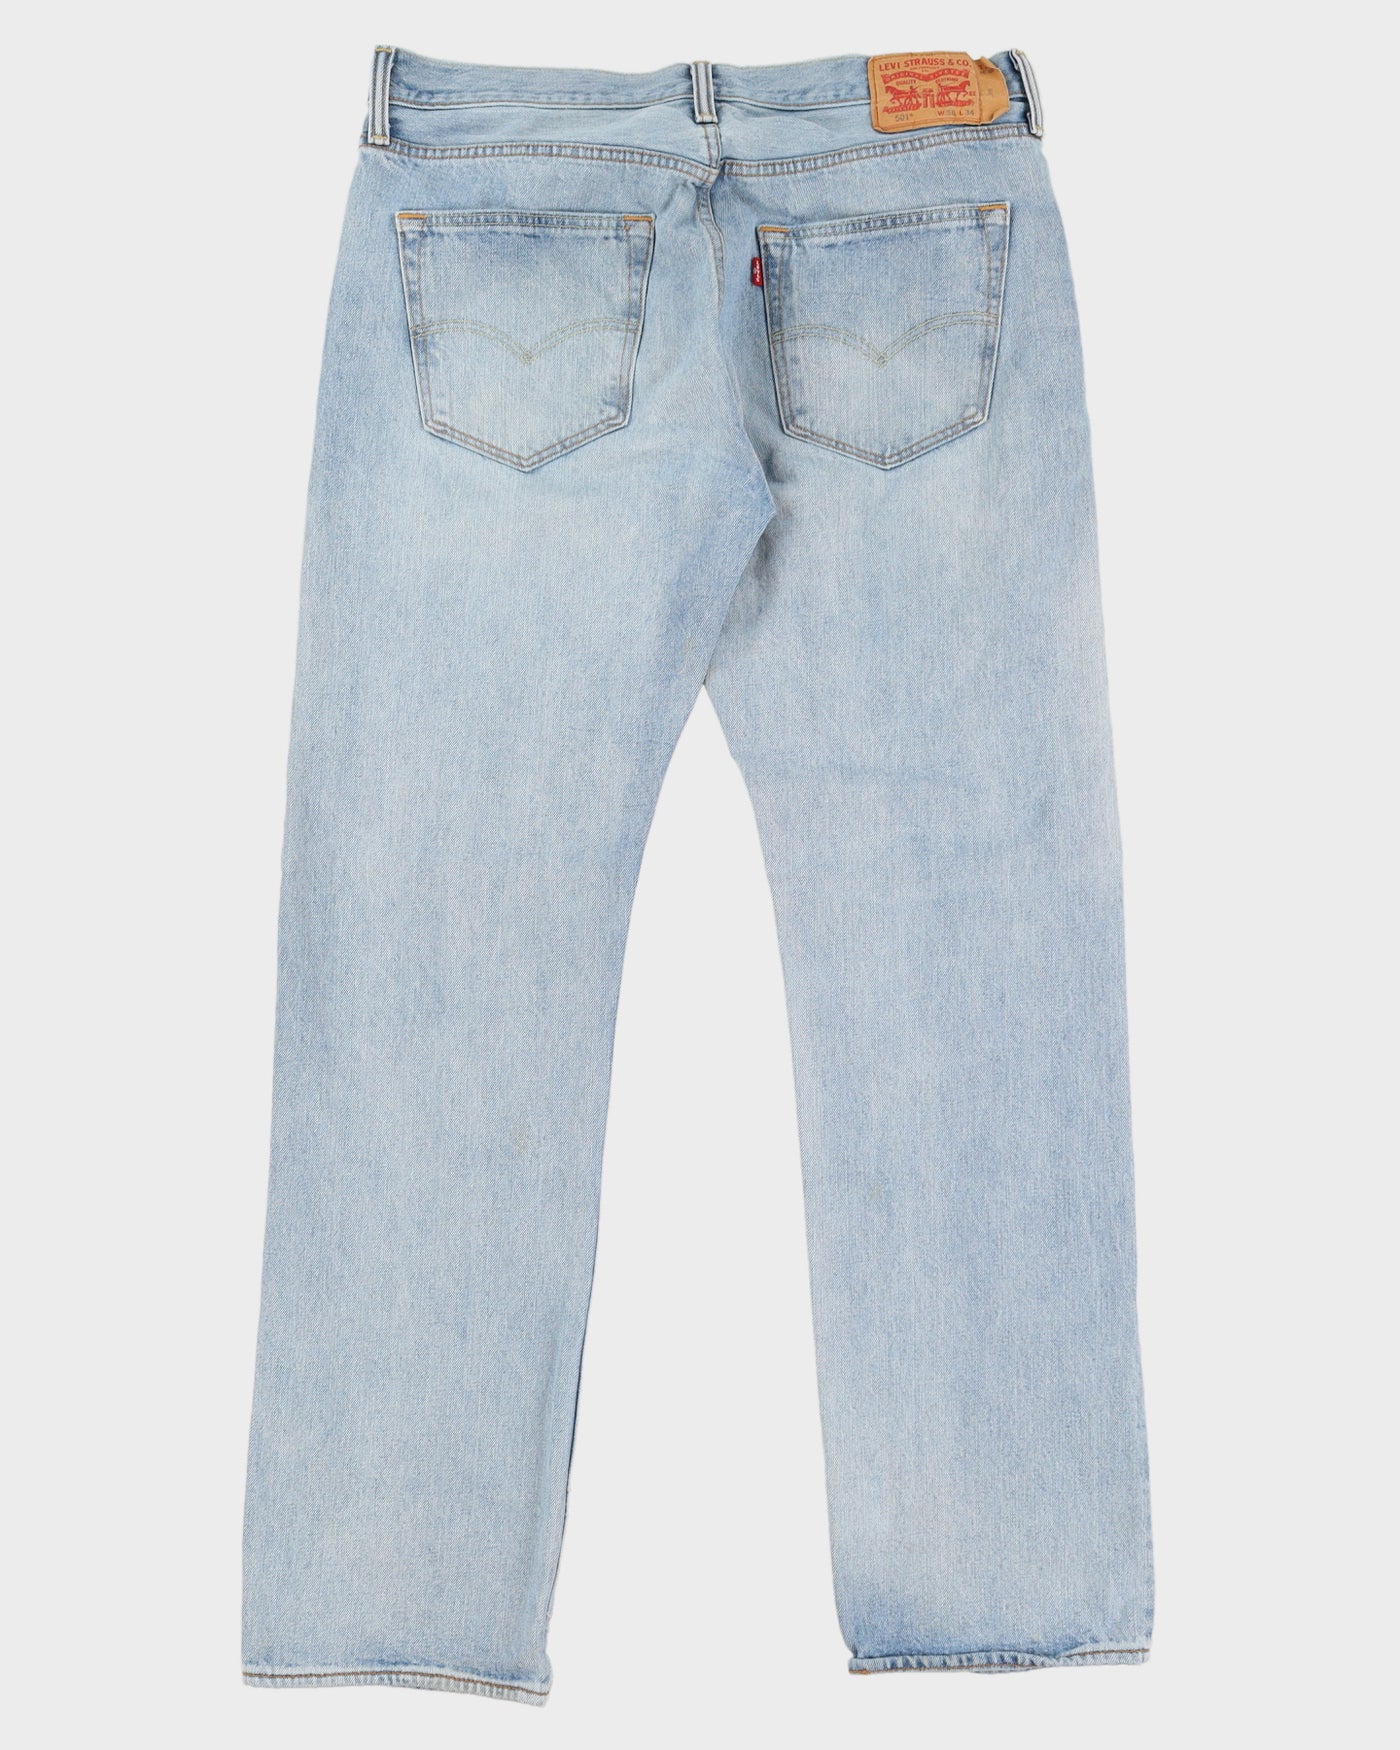 Vintage 90s Levi's 501 Blue Jeans - W36 L34